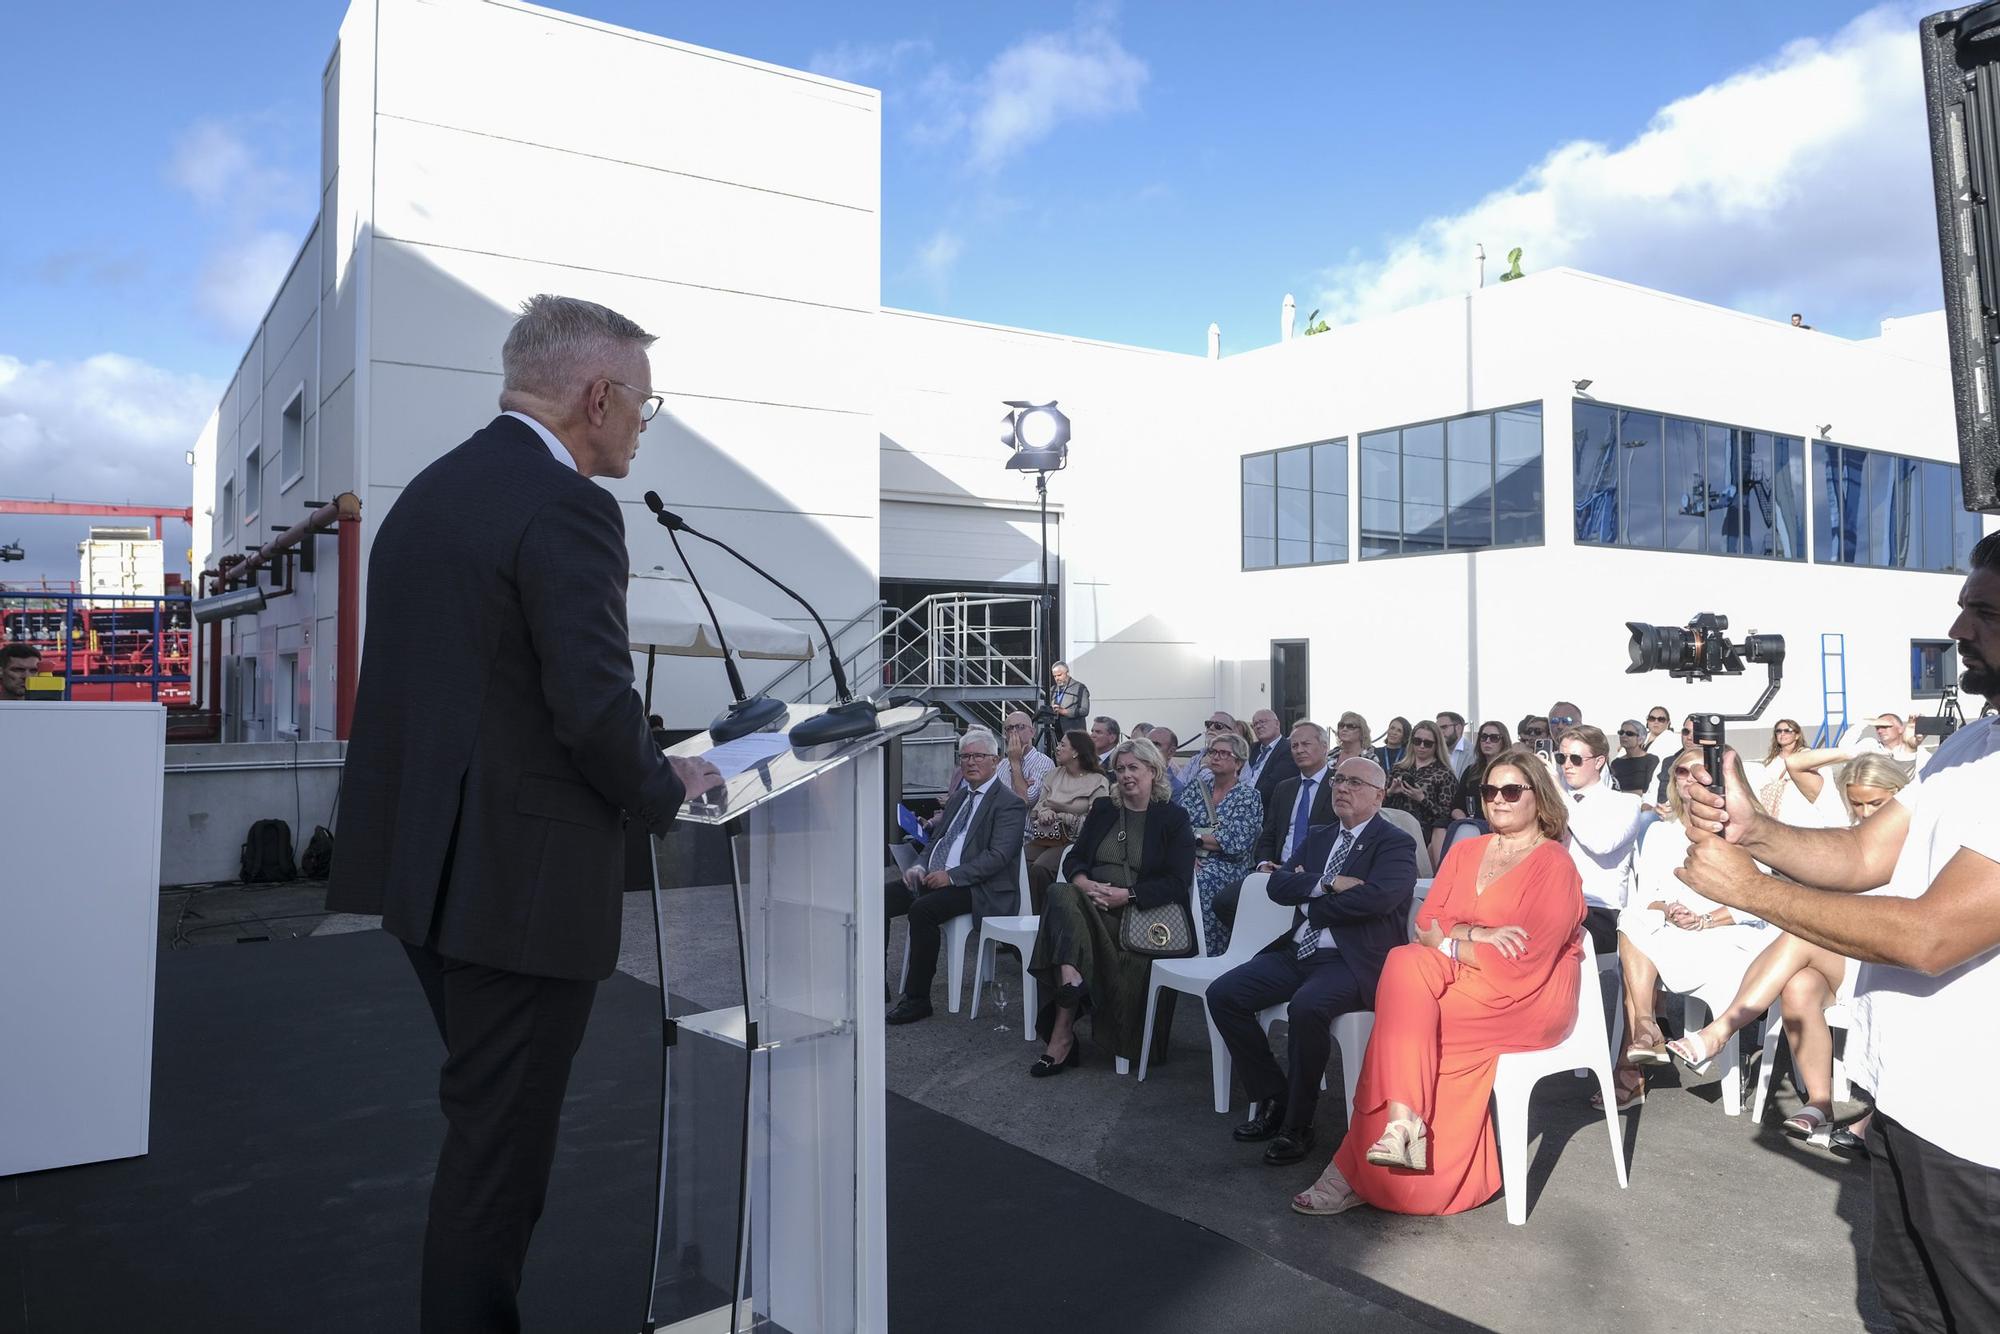 Inauguración de la planta de la empresa Stormalda en el Puerto de Las Palmas